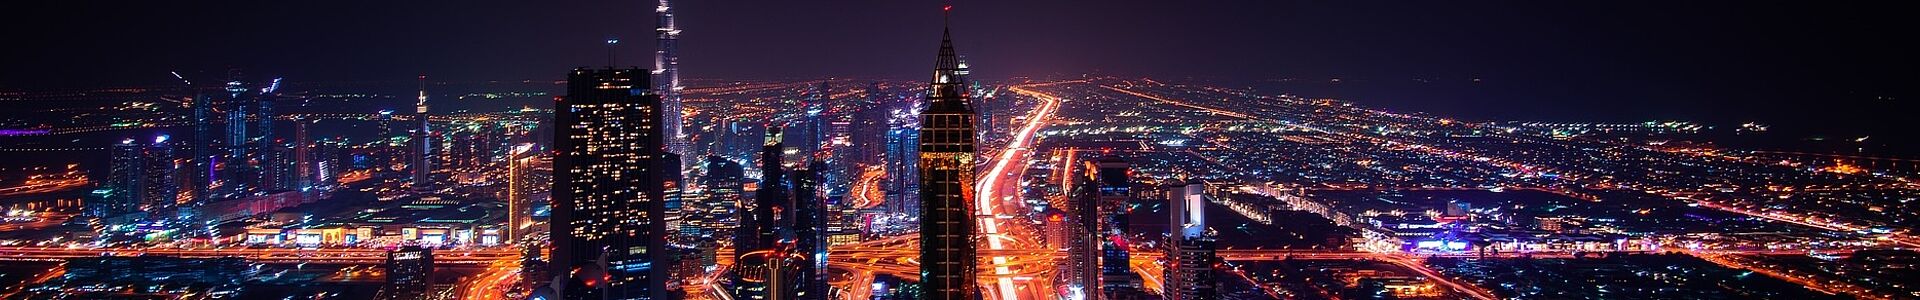 Dubai bei Nacht bunt beleuchtet